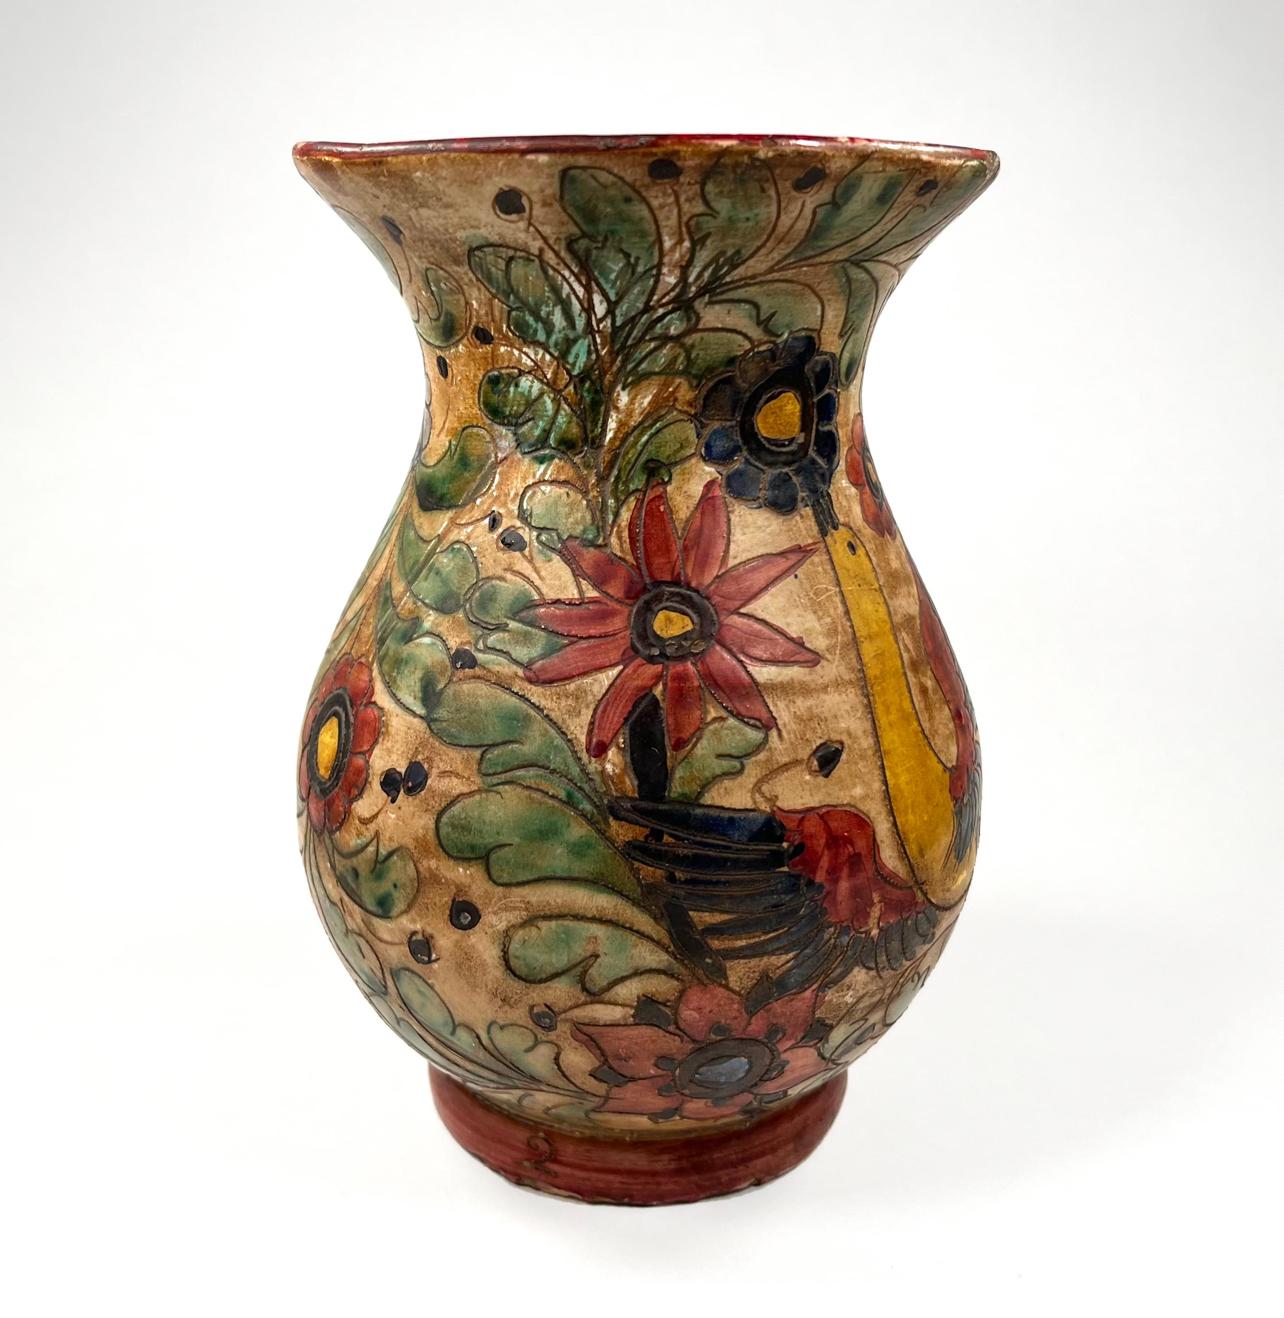 Vase italien en poterie majolique peinte à la main, datant de la fin du XIXe siècle. 

Ce vase est un magnifique exemple de poterie italienne fabriquée à la main.   L'attention portée aux oiseaux, au feuillage et aux fleurs, avec une qualité